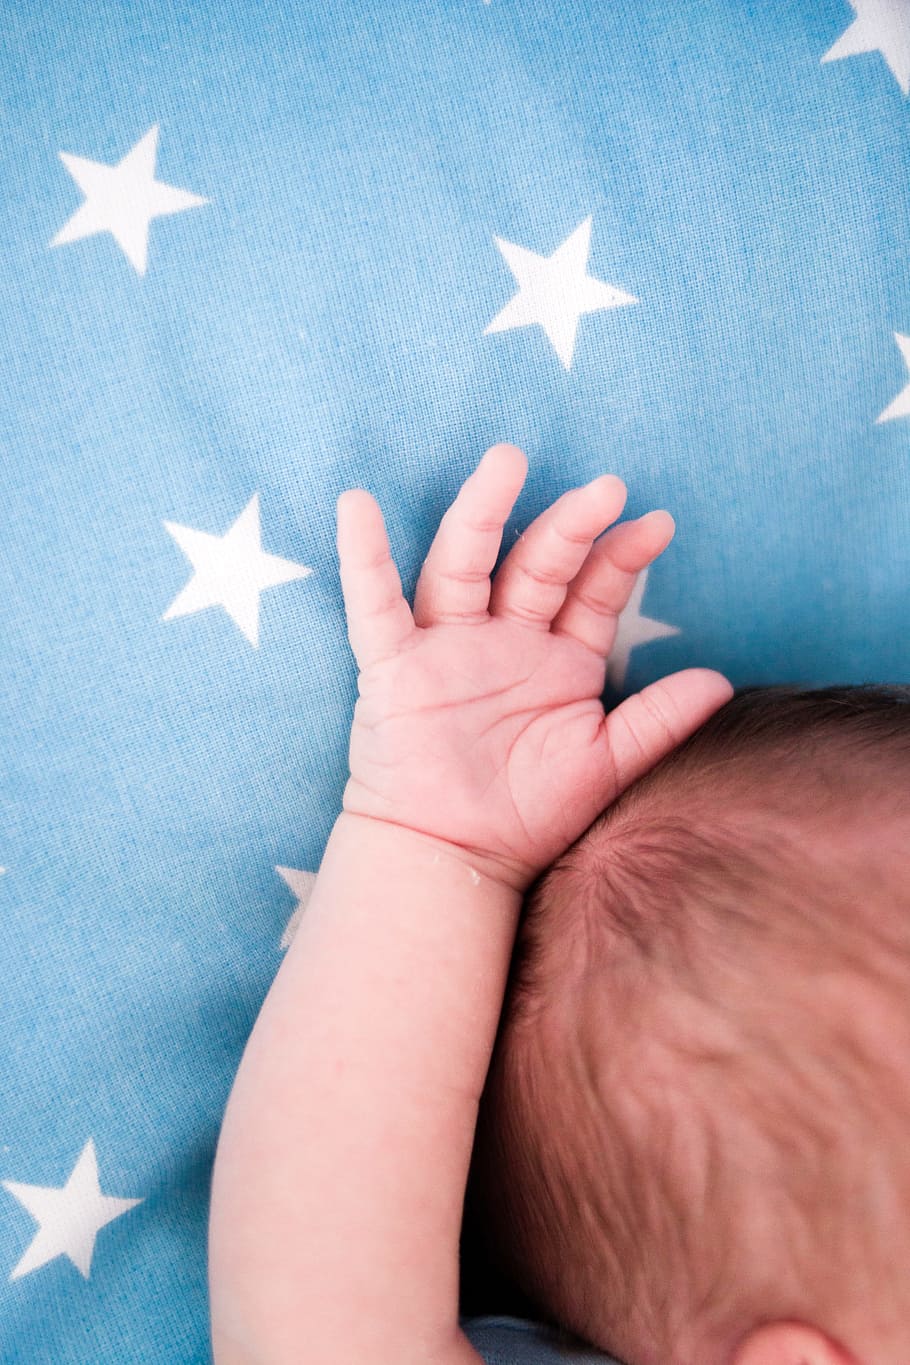 pequeño, bebé, mano, azul, estrellas, dedos, recién nacido, familia, forma de estrella, mano humana